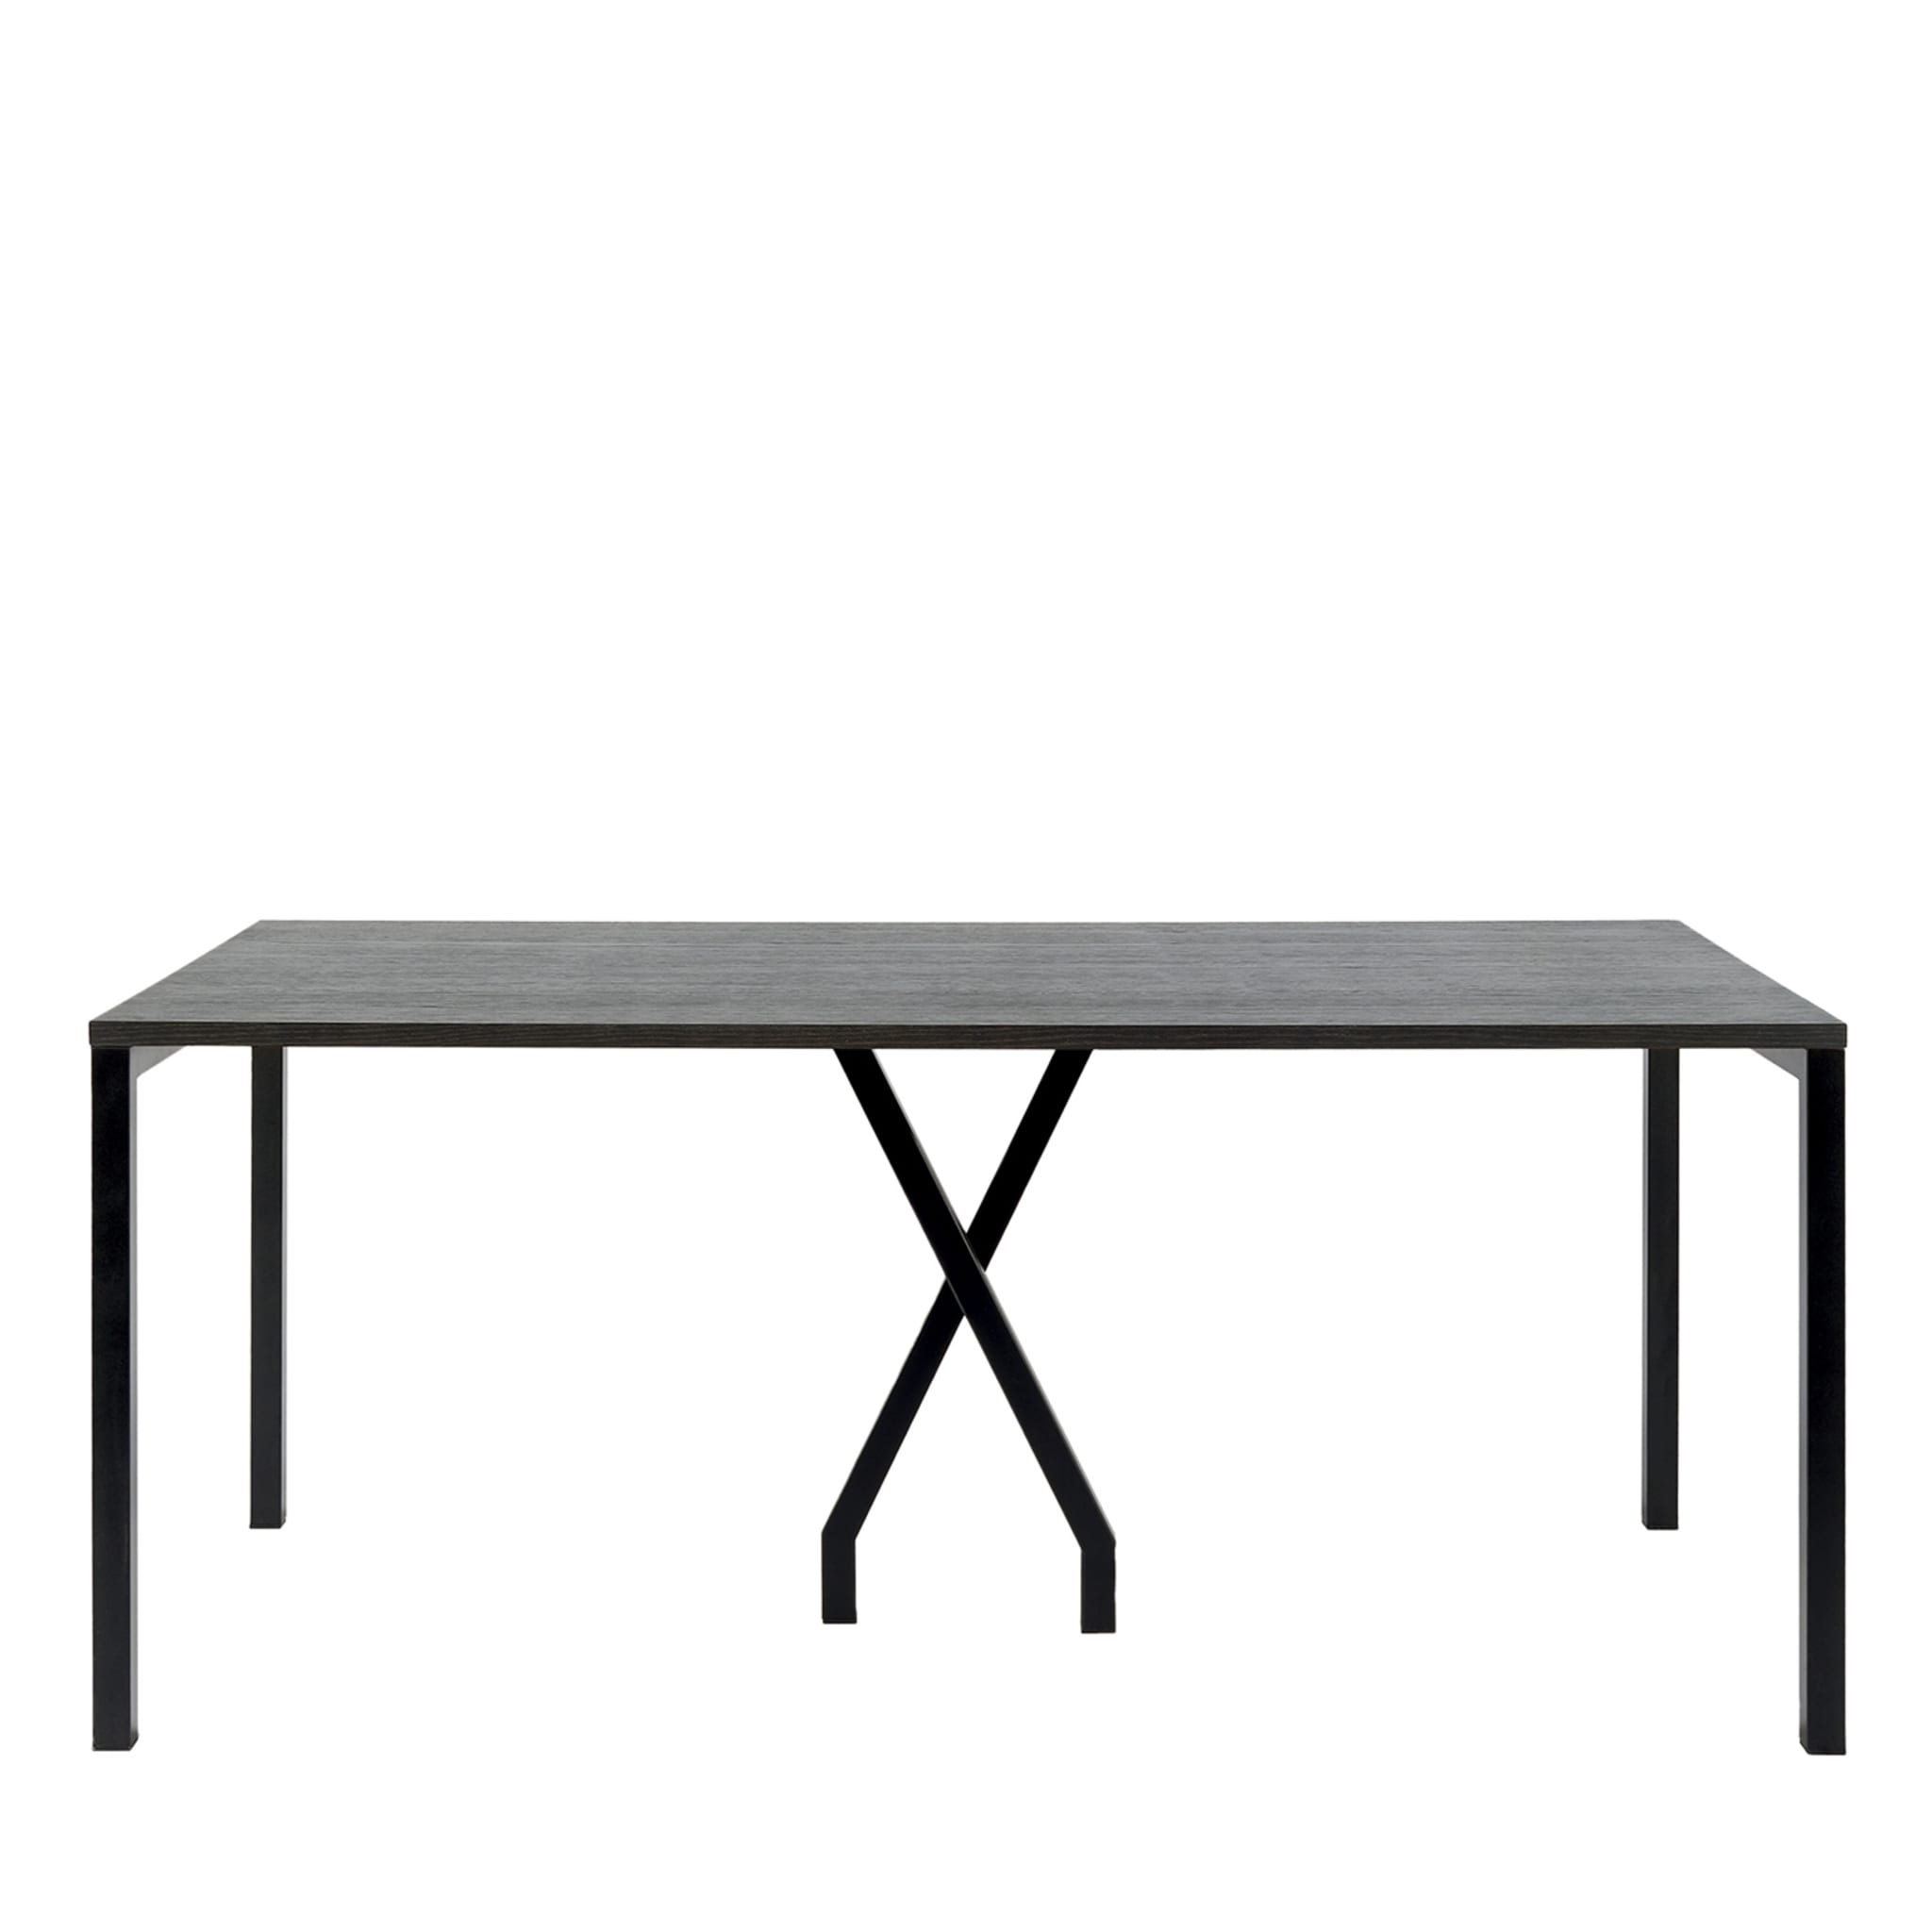 Table rectangulaire noire Cavalletta par Studiocharlie - Vue principale